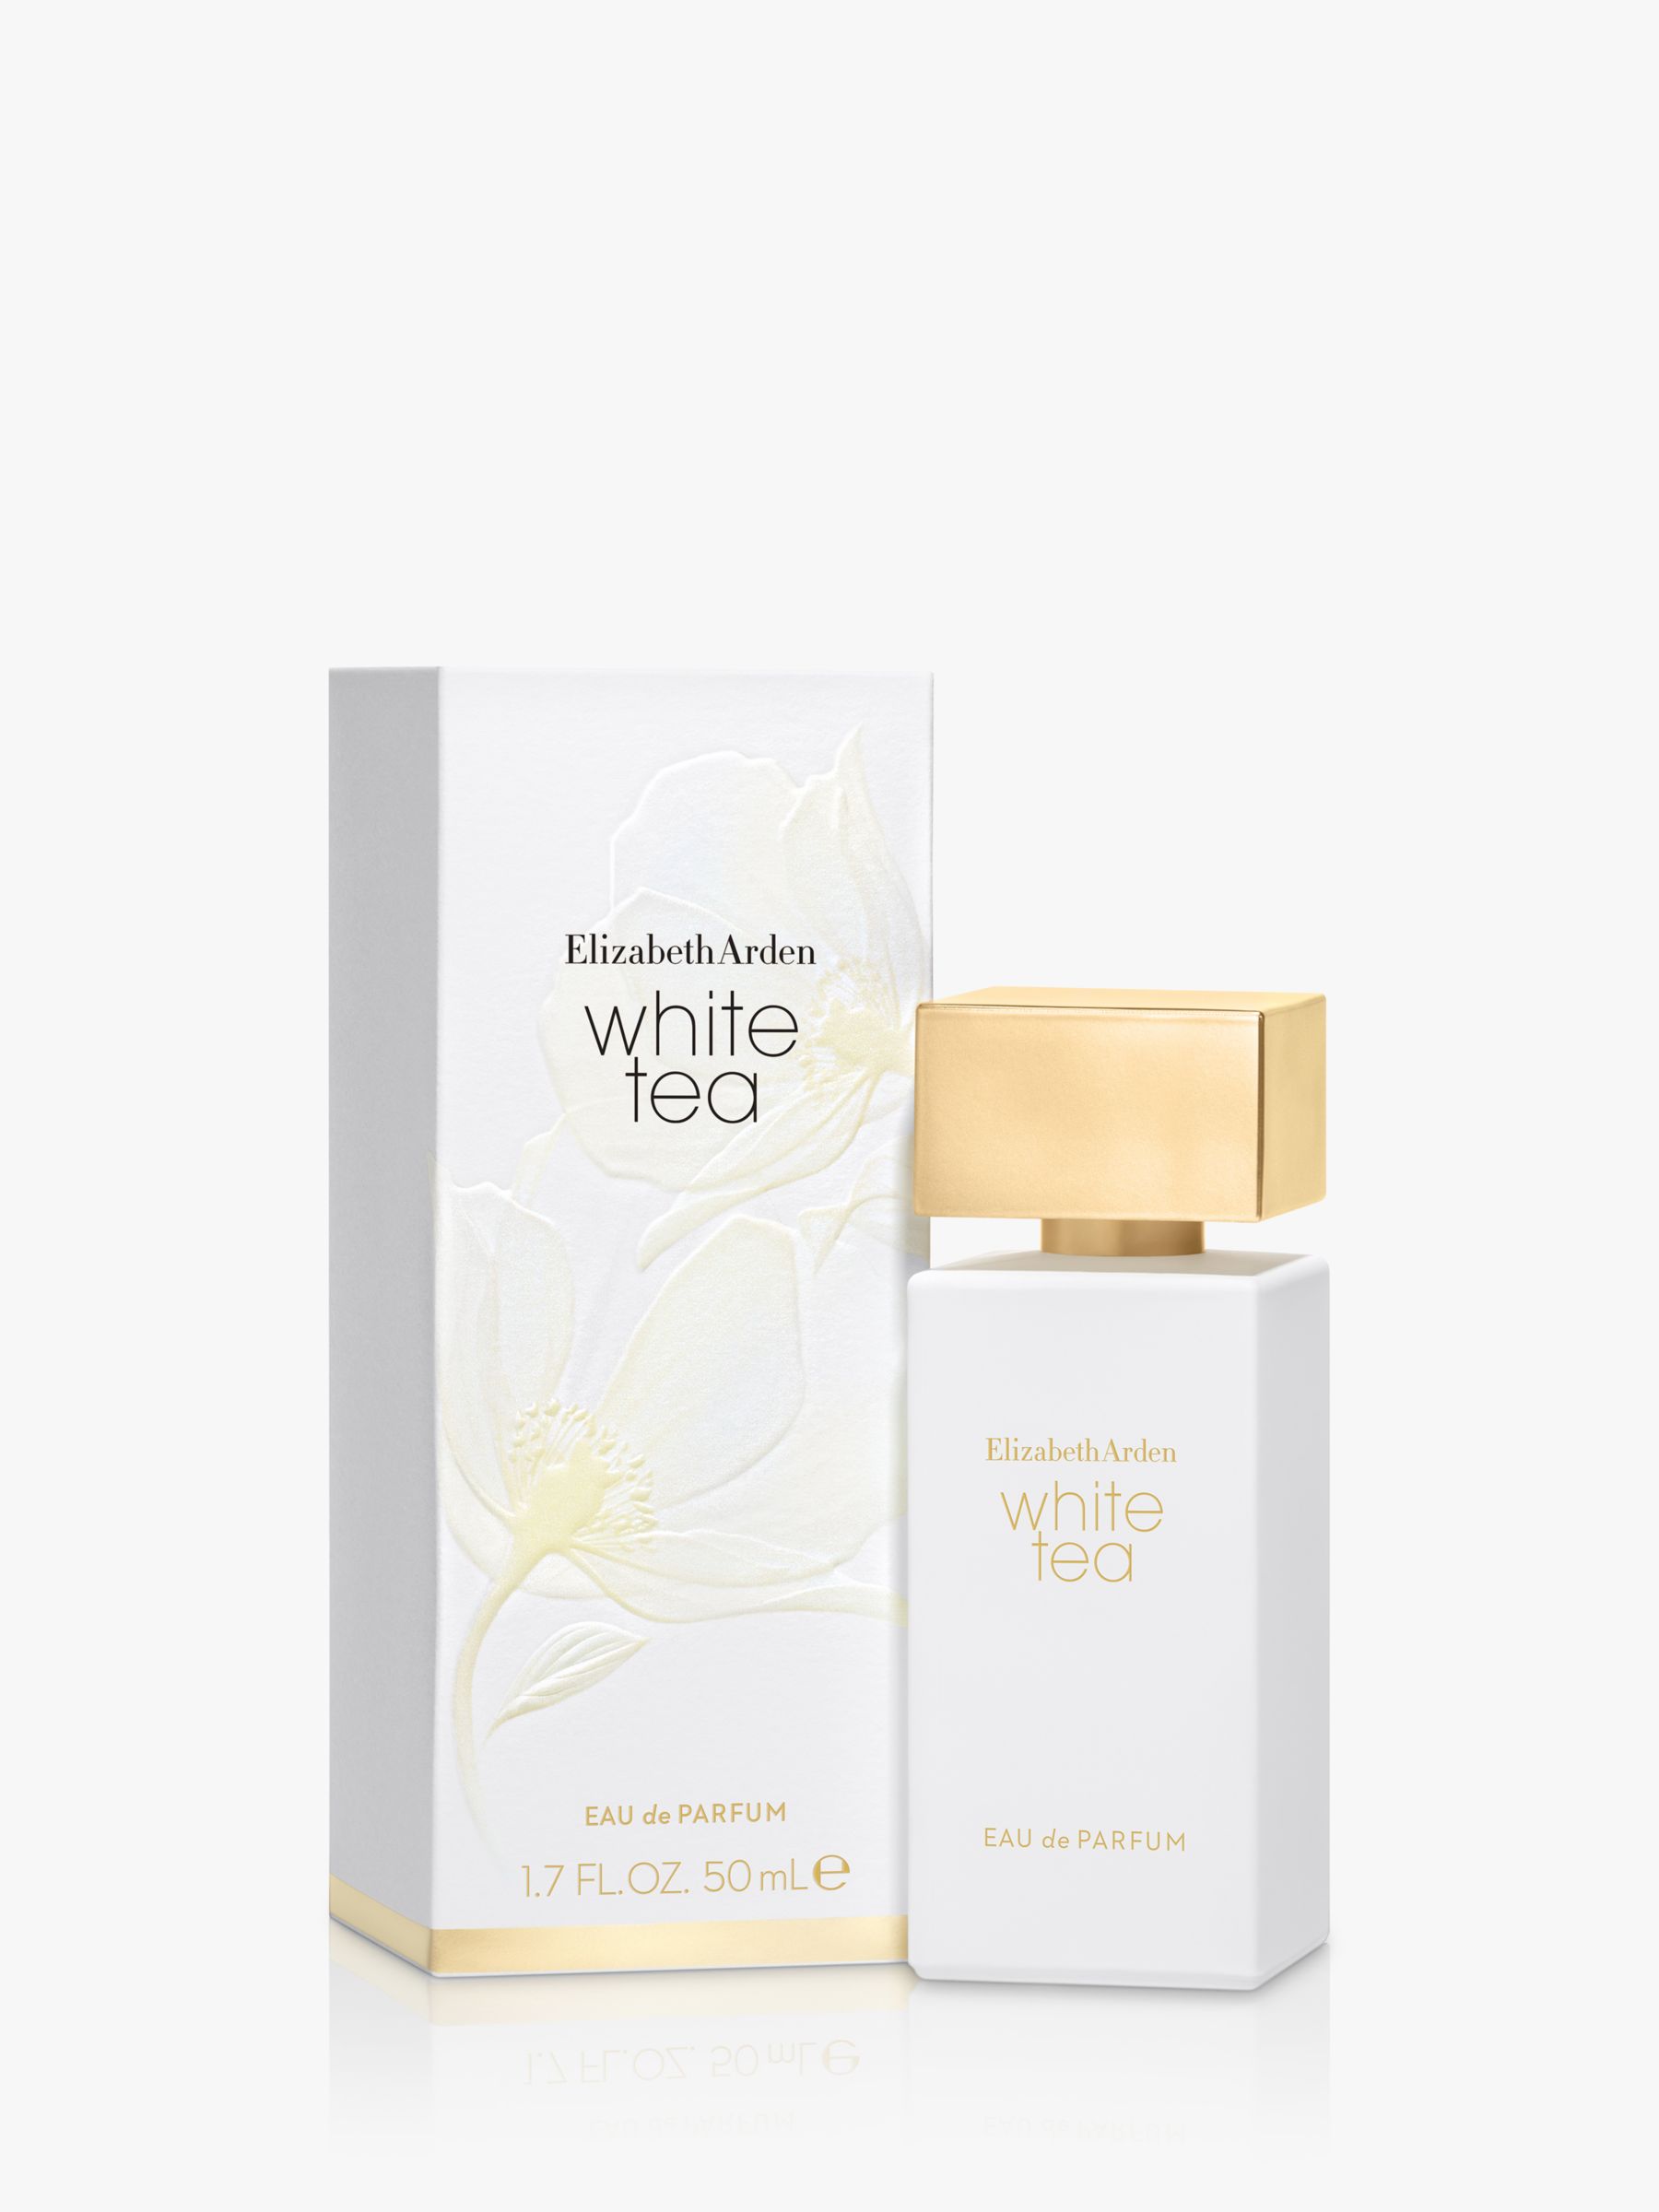 Elizabeth Arden White Tea Eau de Parfum, 50ml at John Lewis Partners